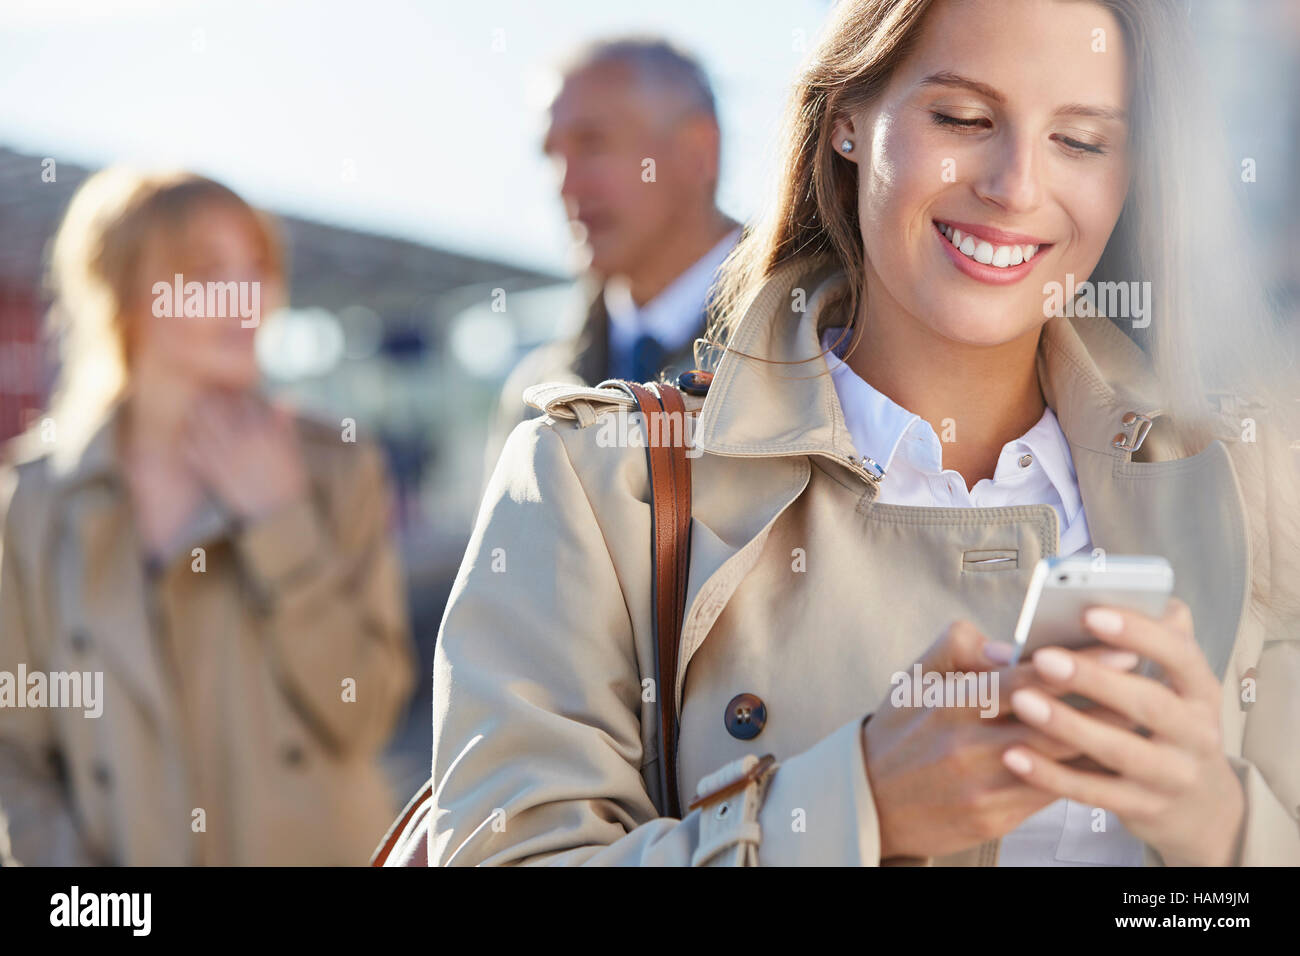 La empresaria sonriente texting con teléfono celular Foto de stock